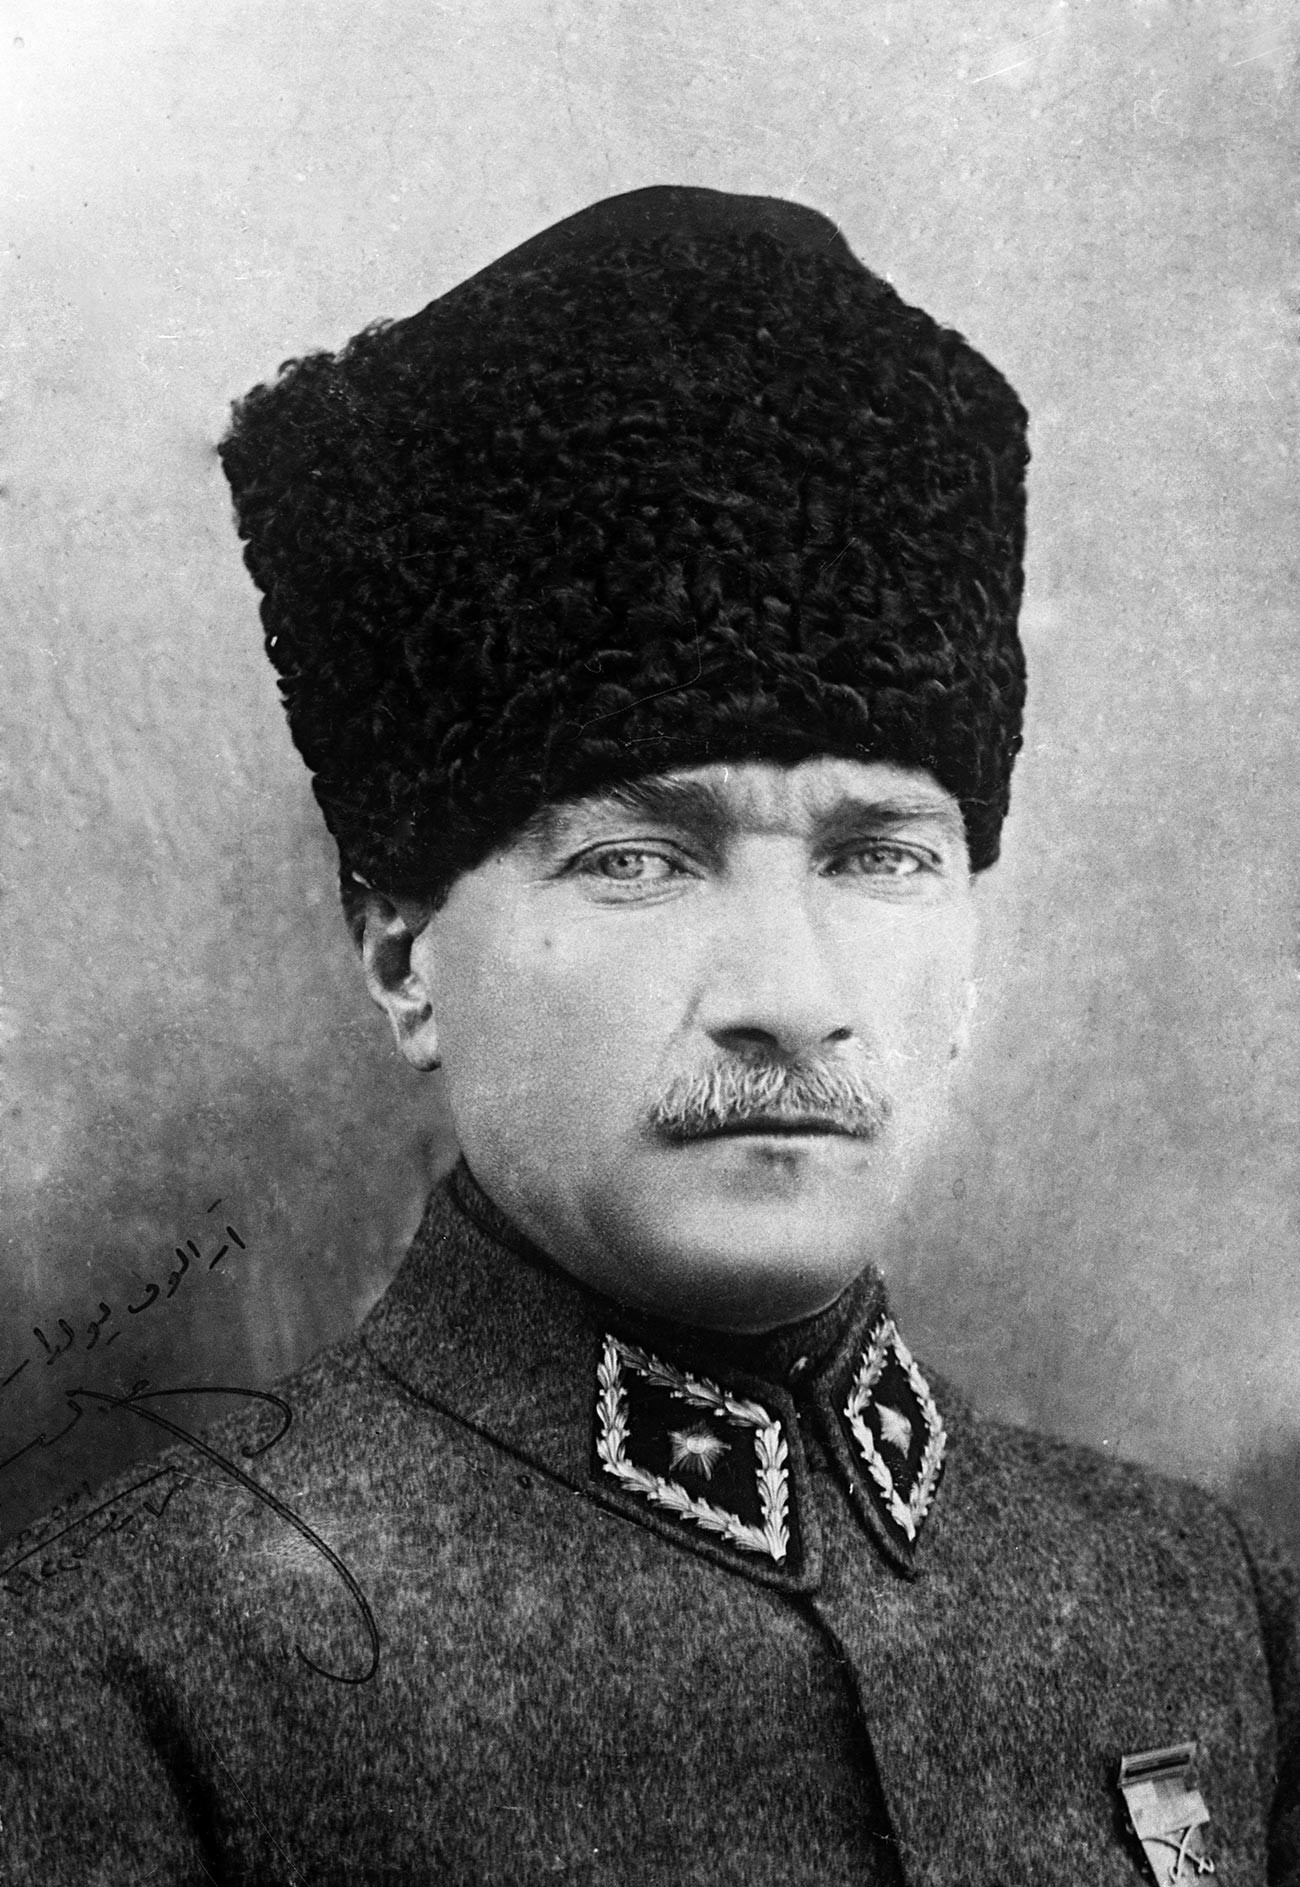 Ritratto di Atatürk regalato all'inviato sovietico in Turchia, Semjon Aralov
